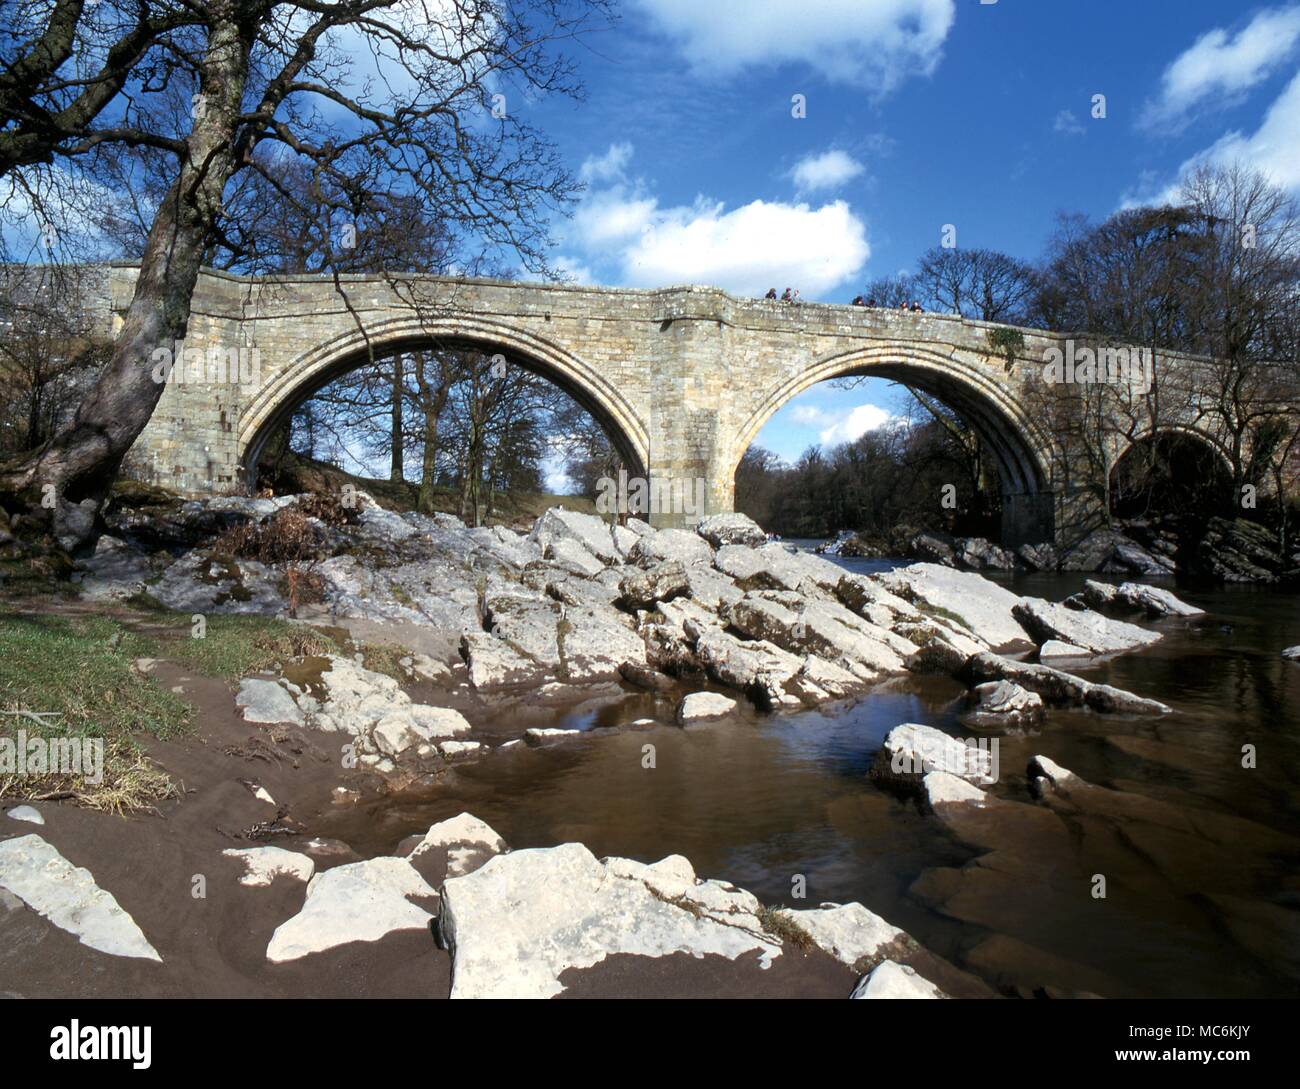 Lugares encantada. Kirkby Lonsdale. El puente medieval, se dice que es perseguido por un perro. Algún vínculo con la leyenda del Puente del Diablo, por lo que los lugareños llaman 'Devil's Dyke''. Foto de stock